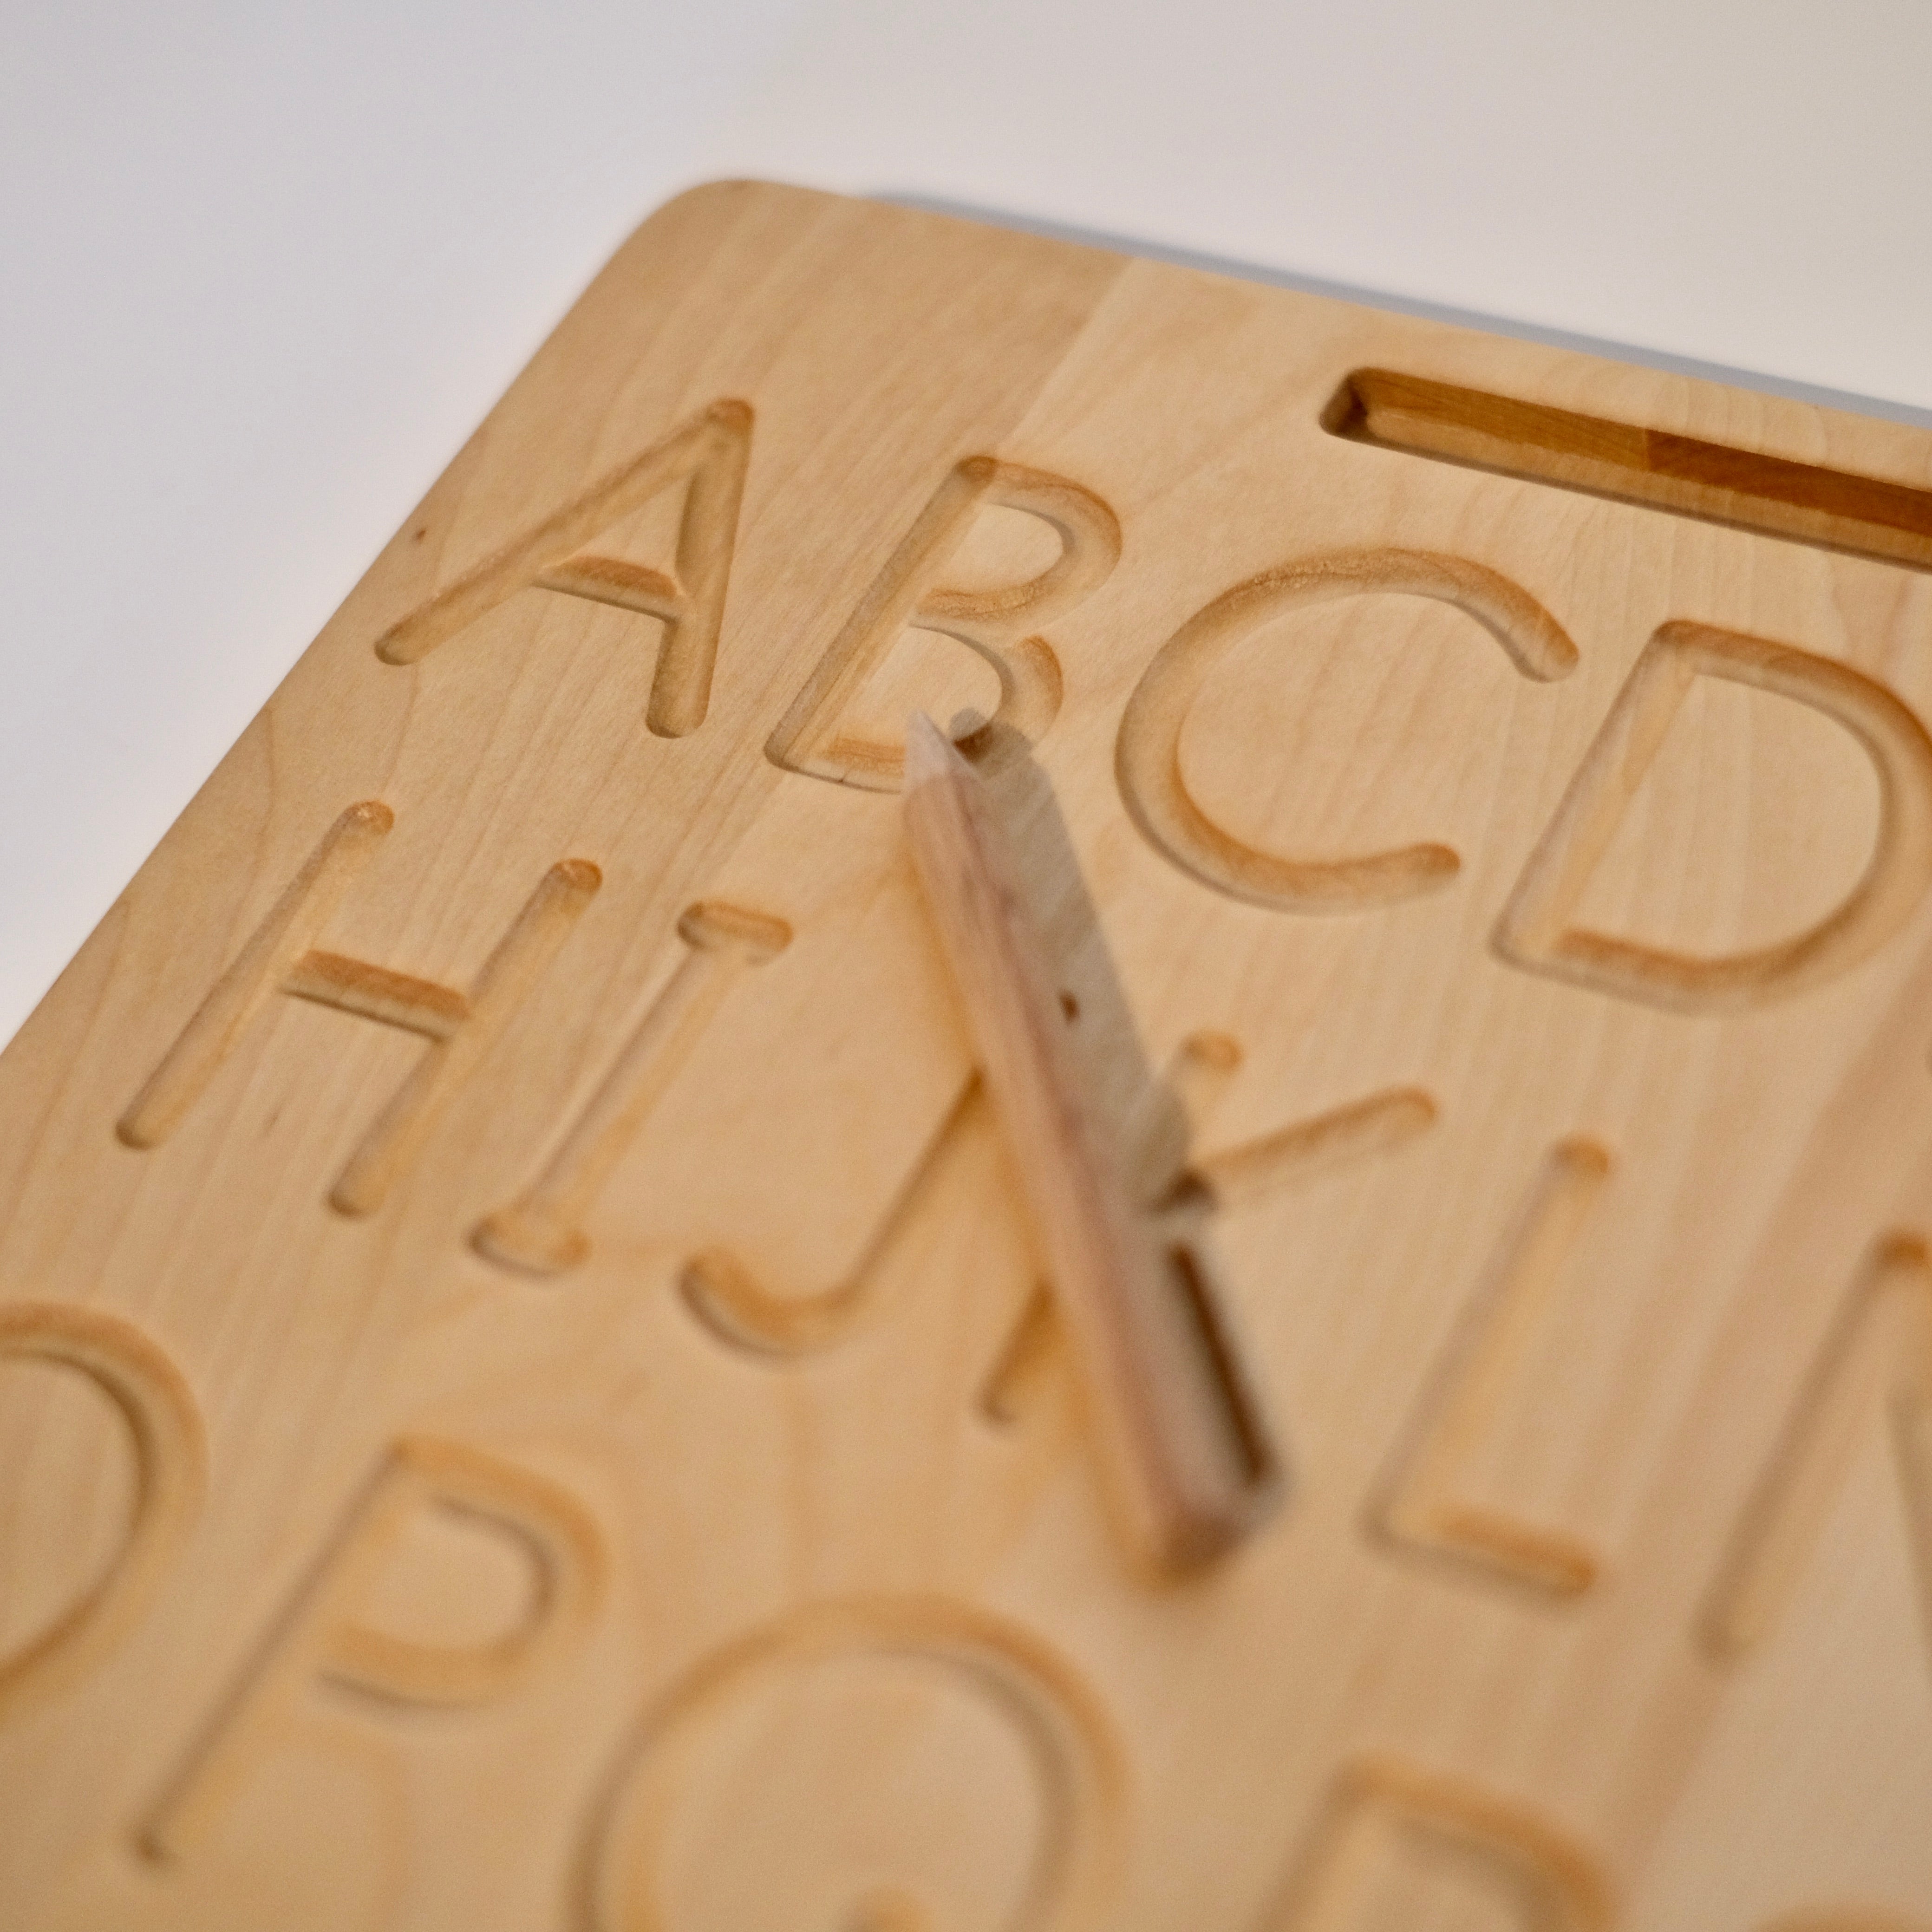 Tracing board alfabet